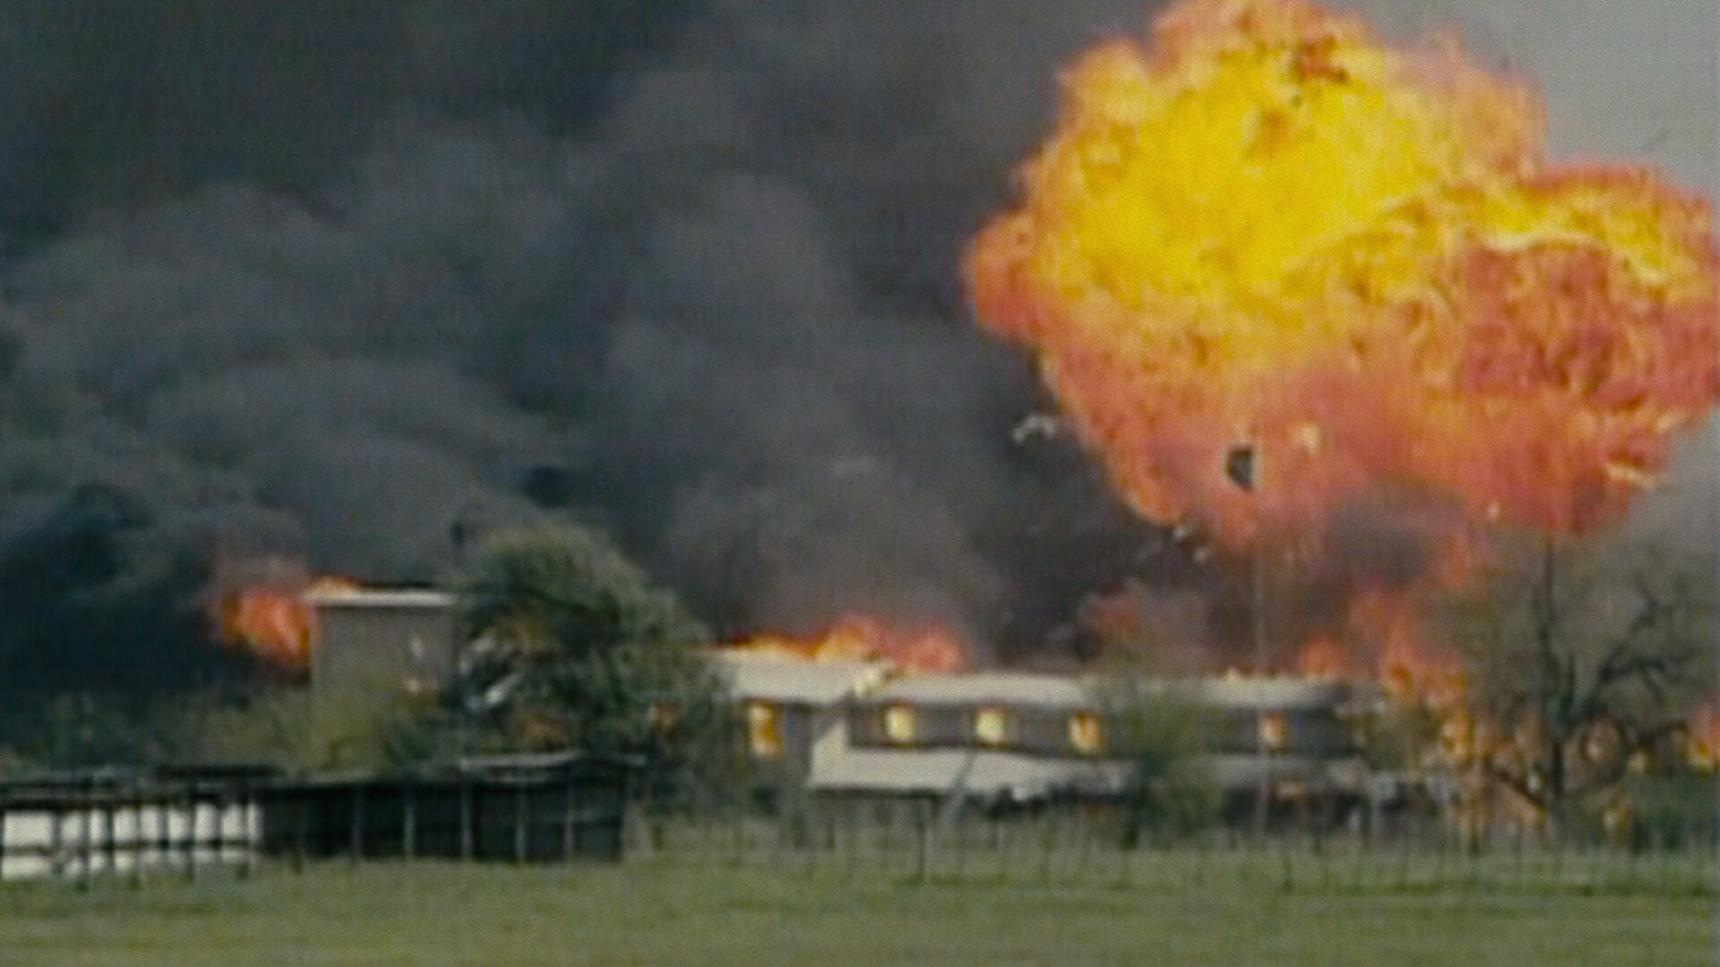 Poster del episodio 3 de Waco: El apocalipsis texano online